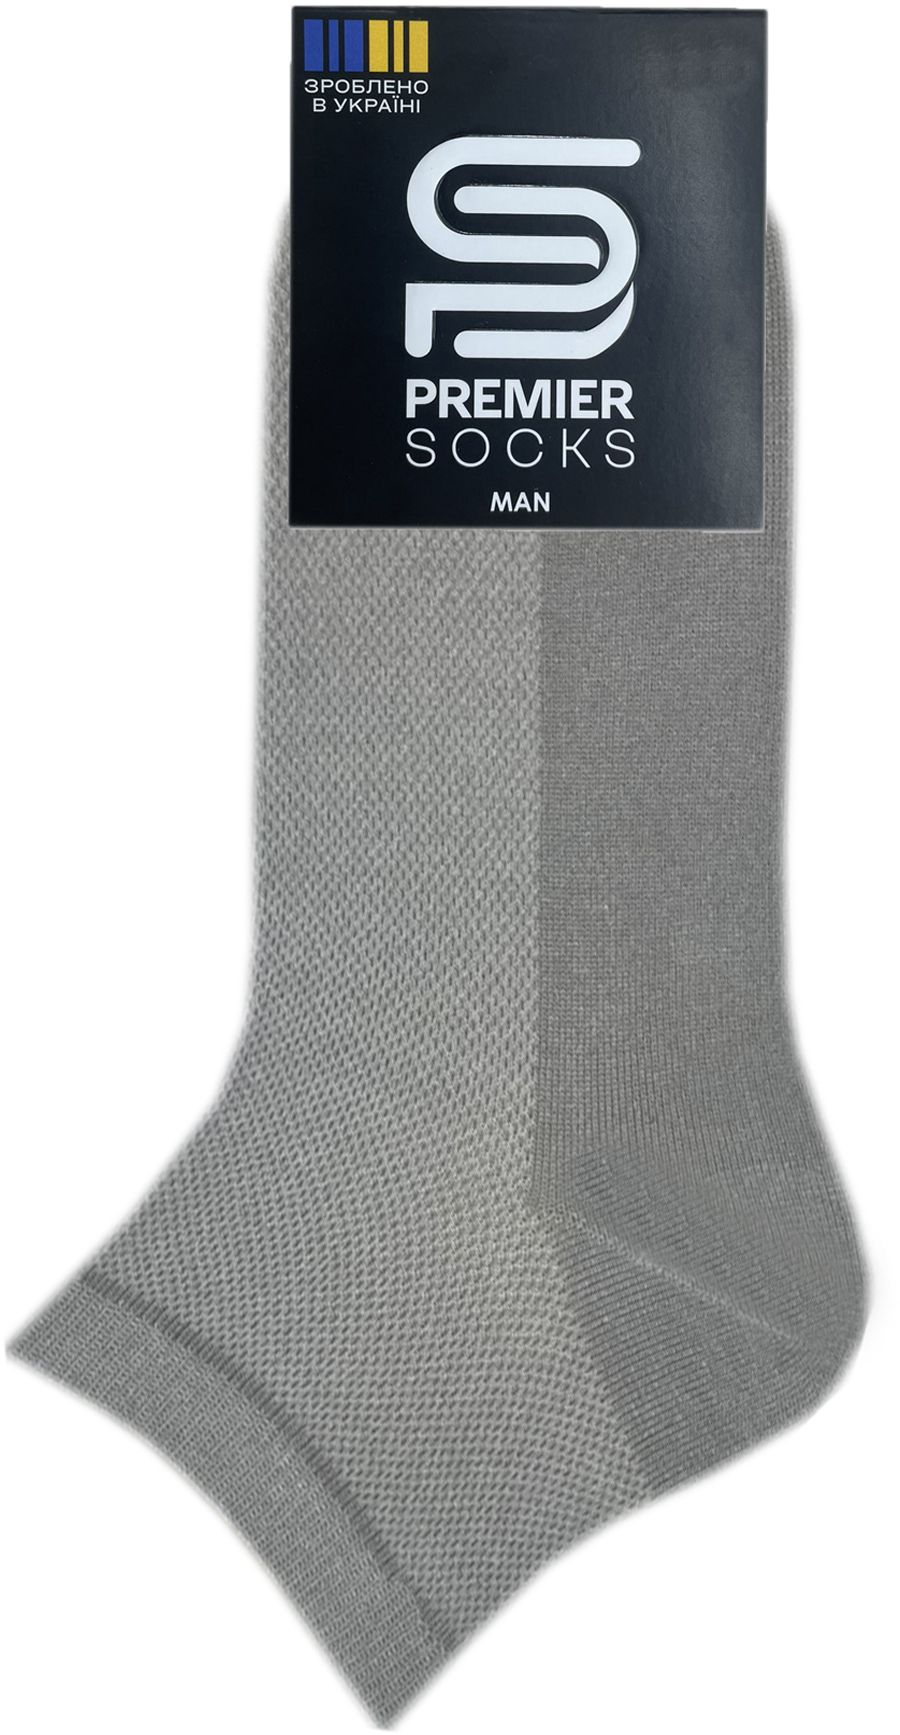 Носки мужские Premier Socks 42-43 1 пара светло-серые (4820163317892) фото 2